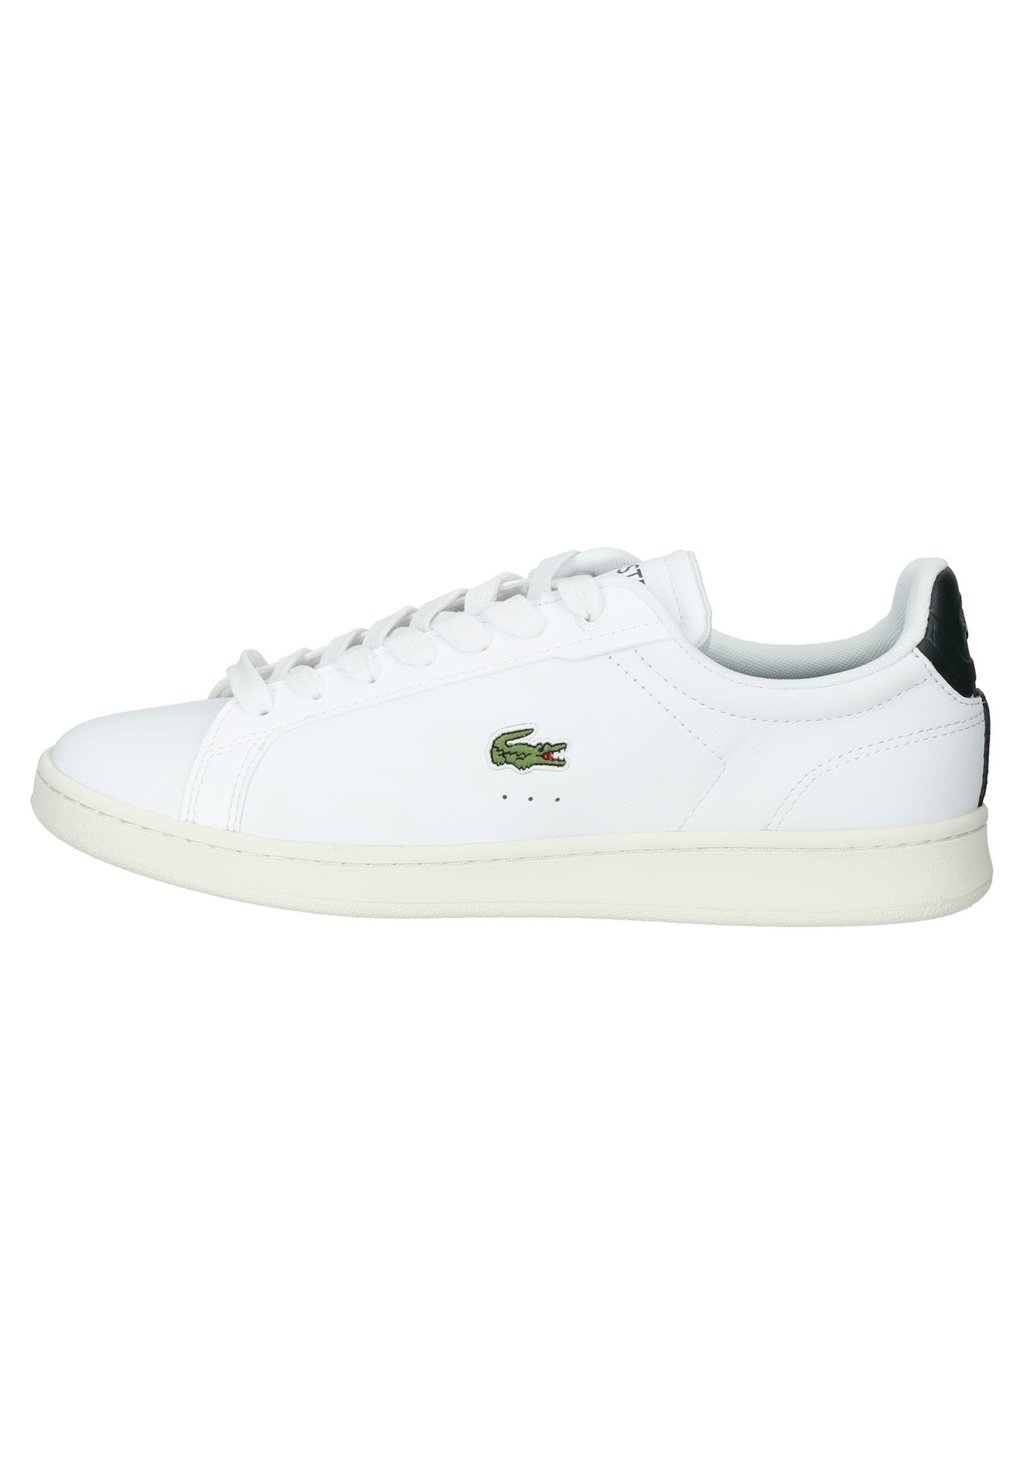 Низкие кроссовки CARNABY PRO 123 9 SMA Lacoste, белый/черный зеленый